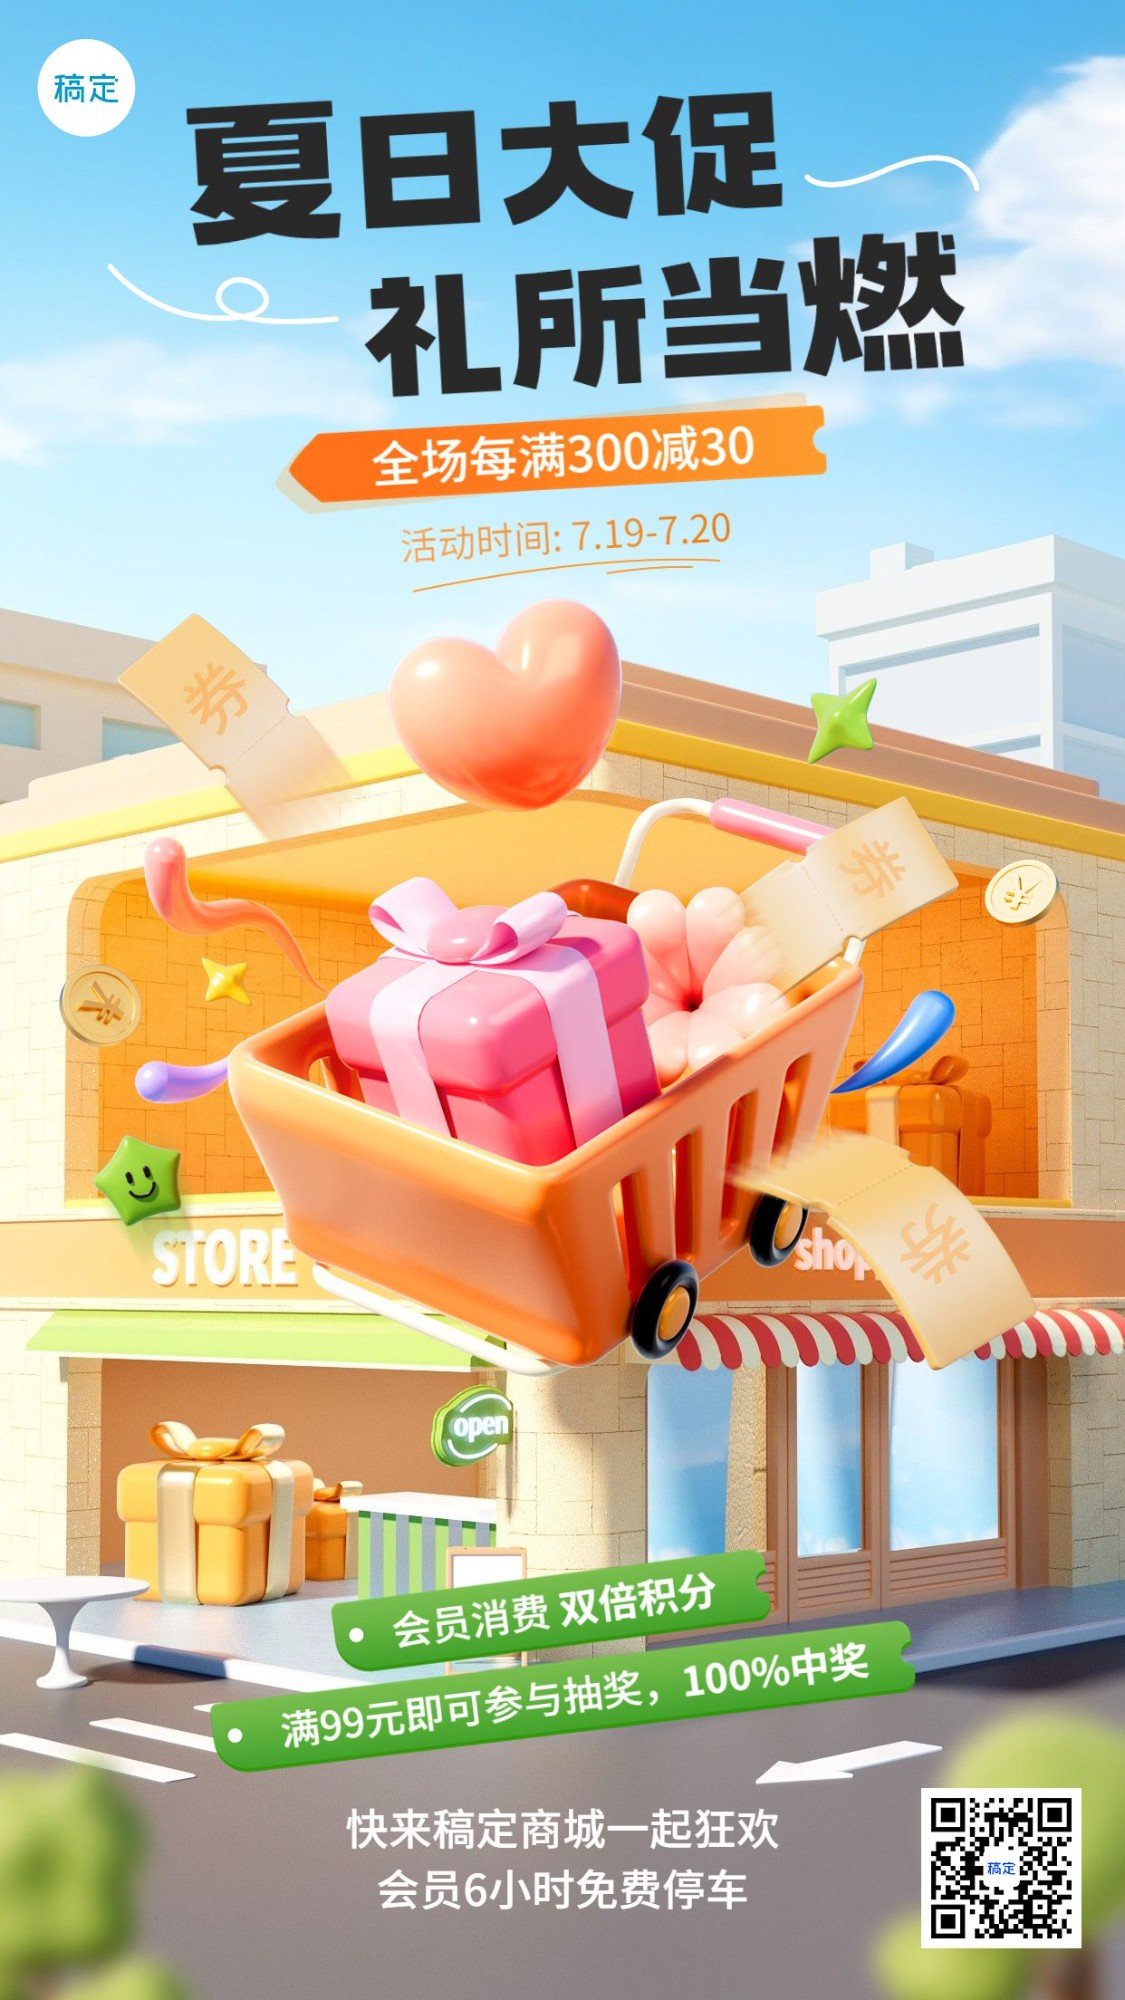 商品零售商场超市百货促销活动3D竖版手机海报预览效果